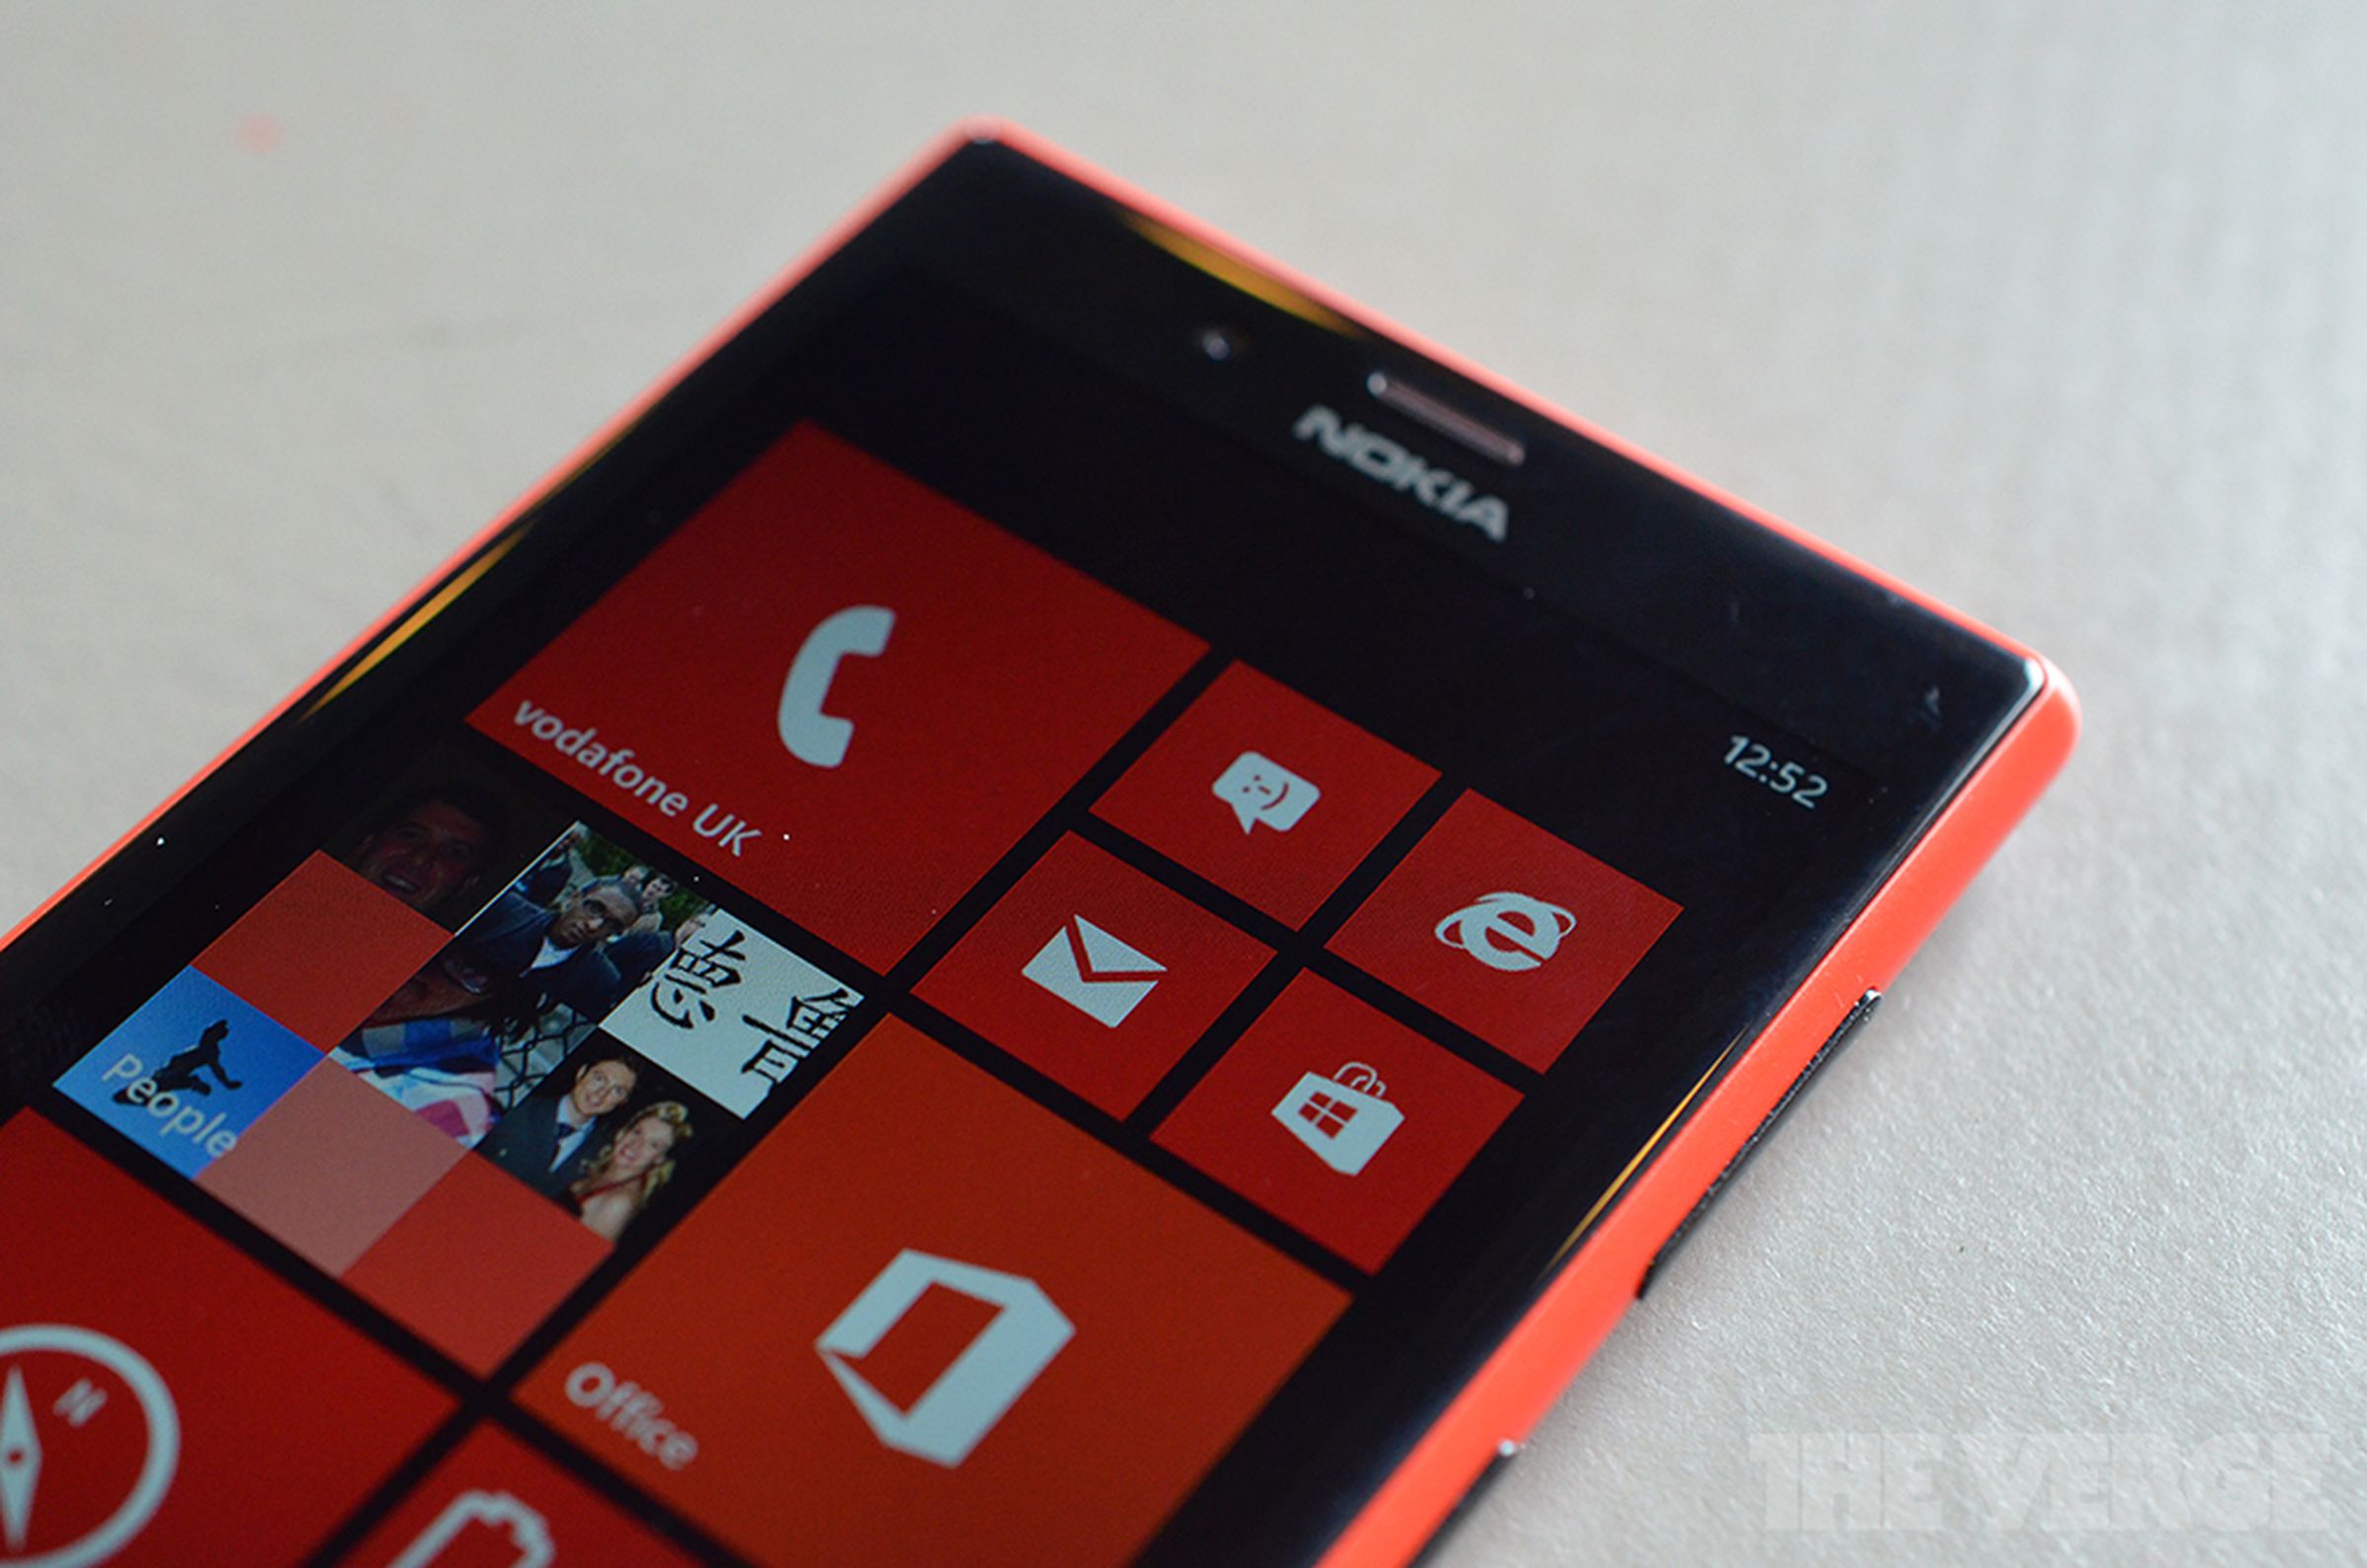 Nokia Lumia 720 photos